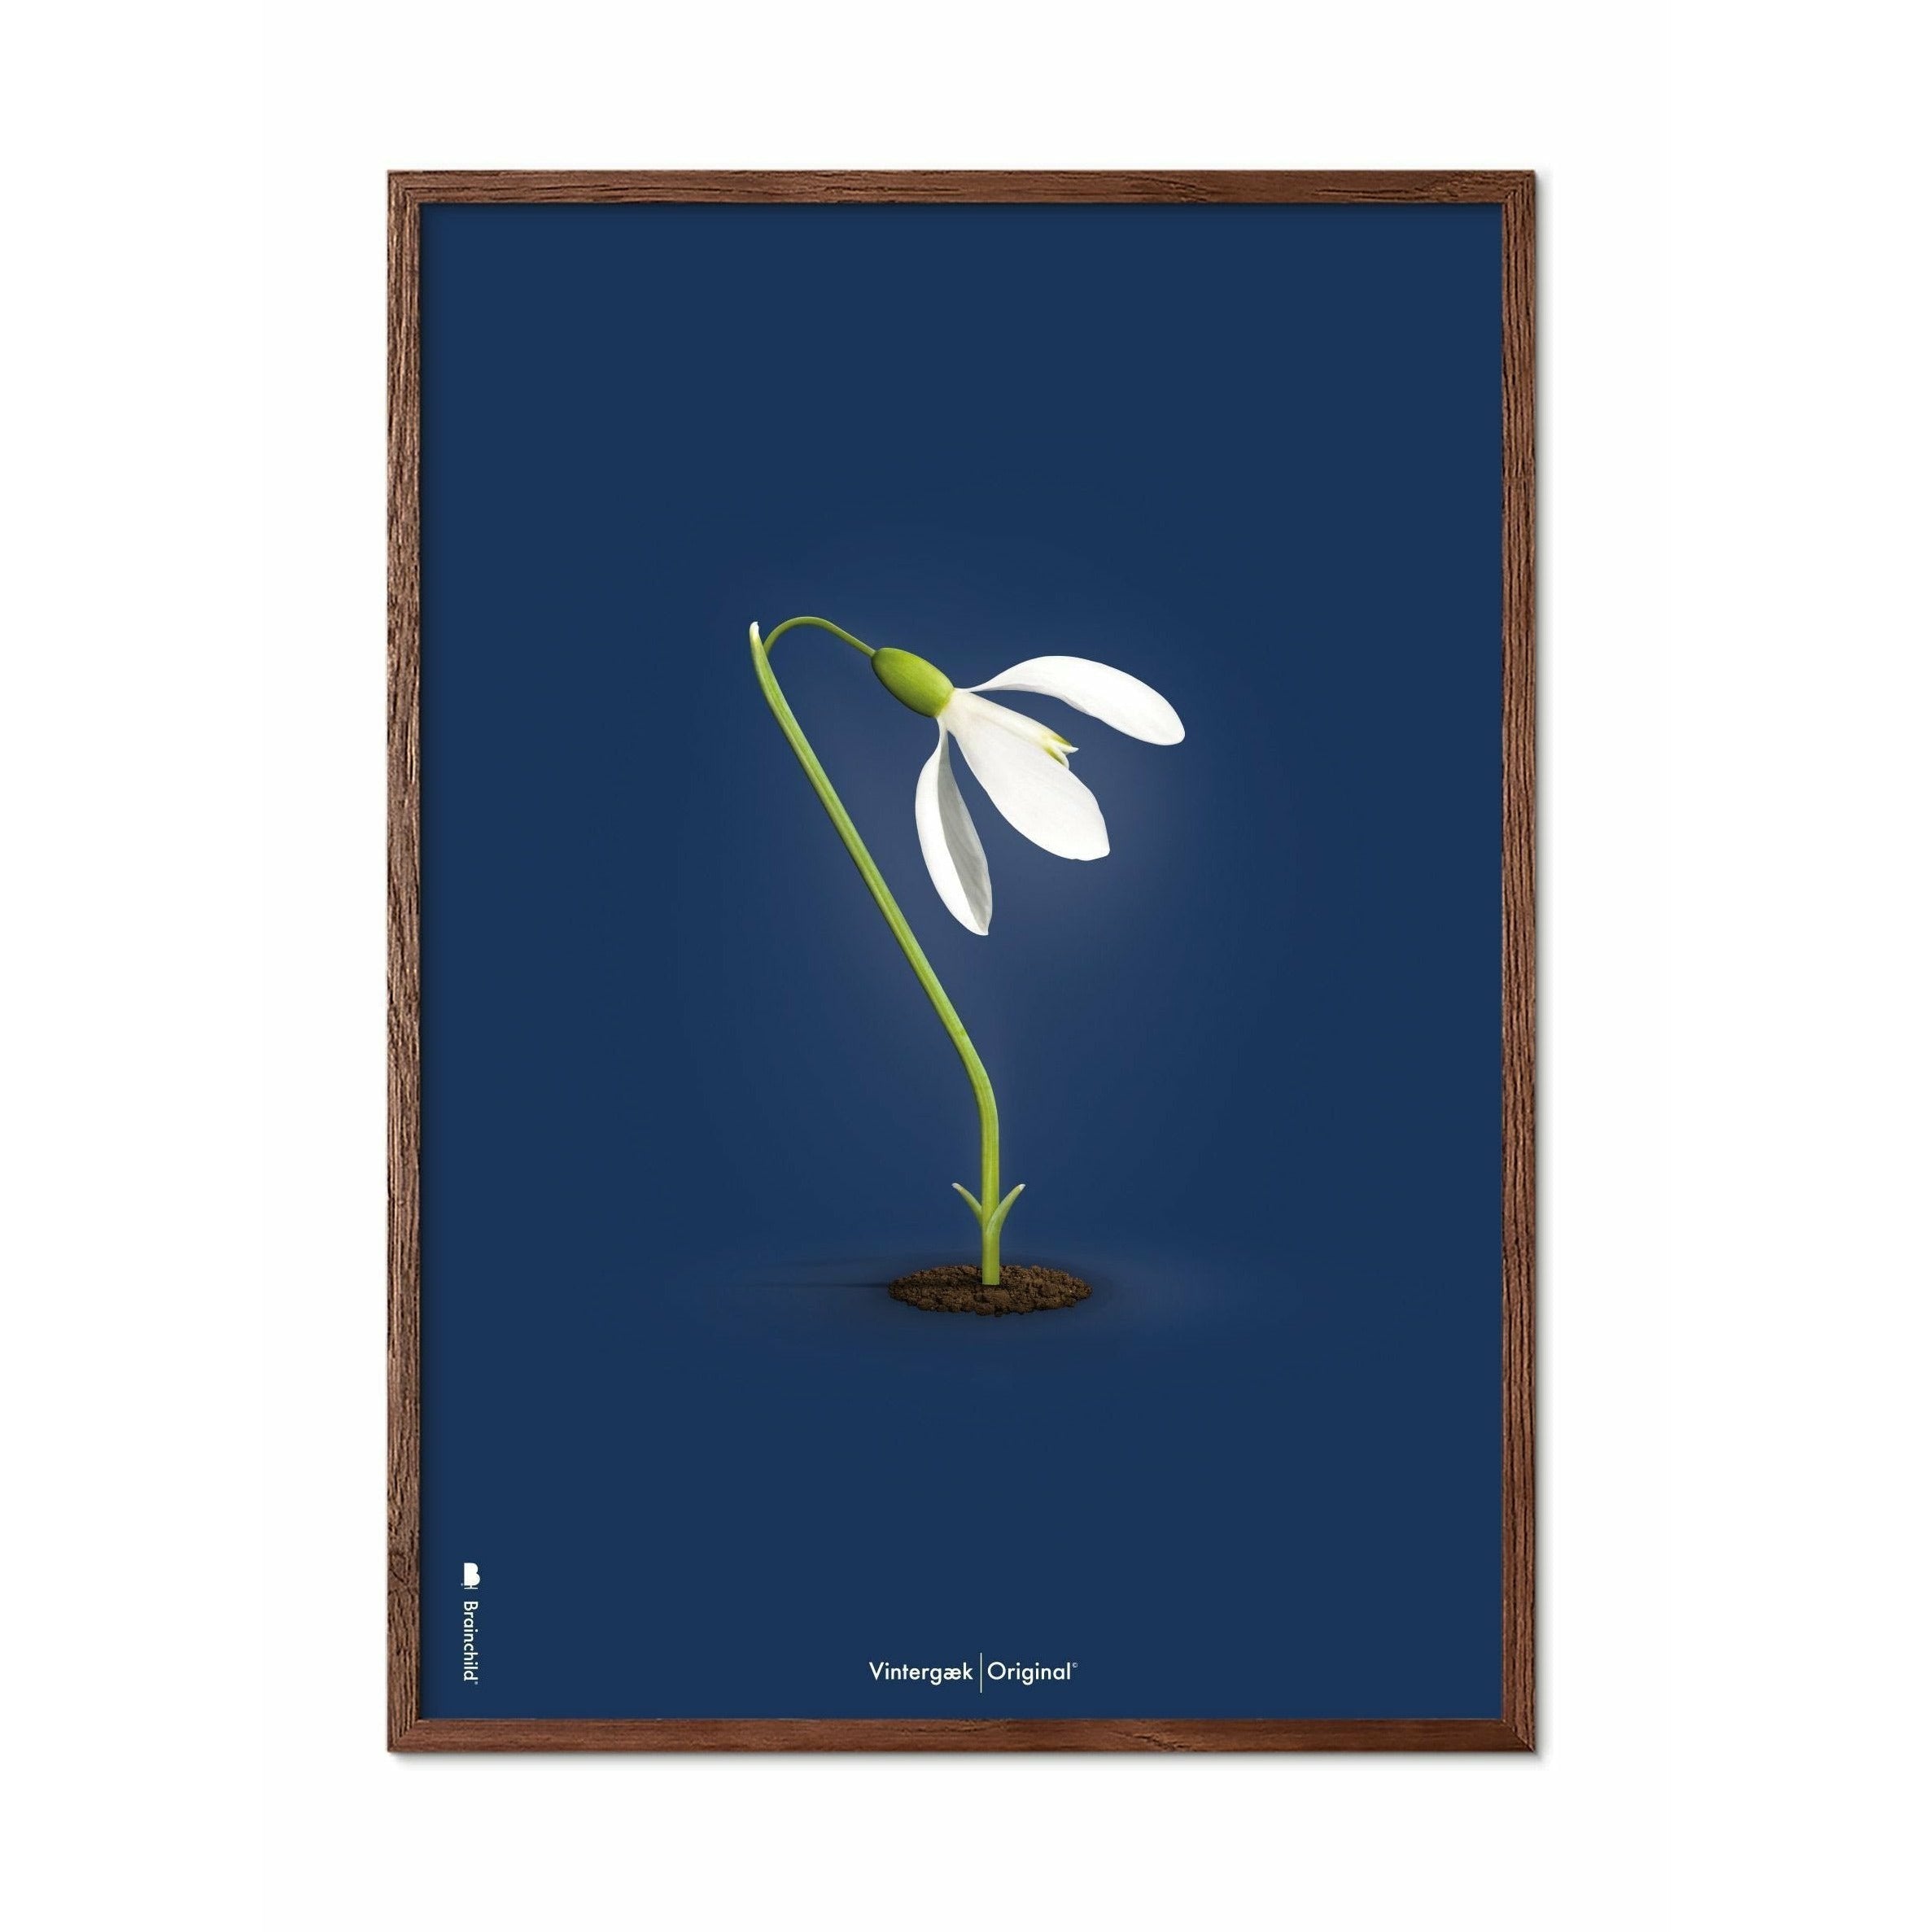 Brainchild Snowdrop Classic Poster, Frame Made Of Dark Wood 50x70 Cm, Dark Blue Background